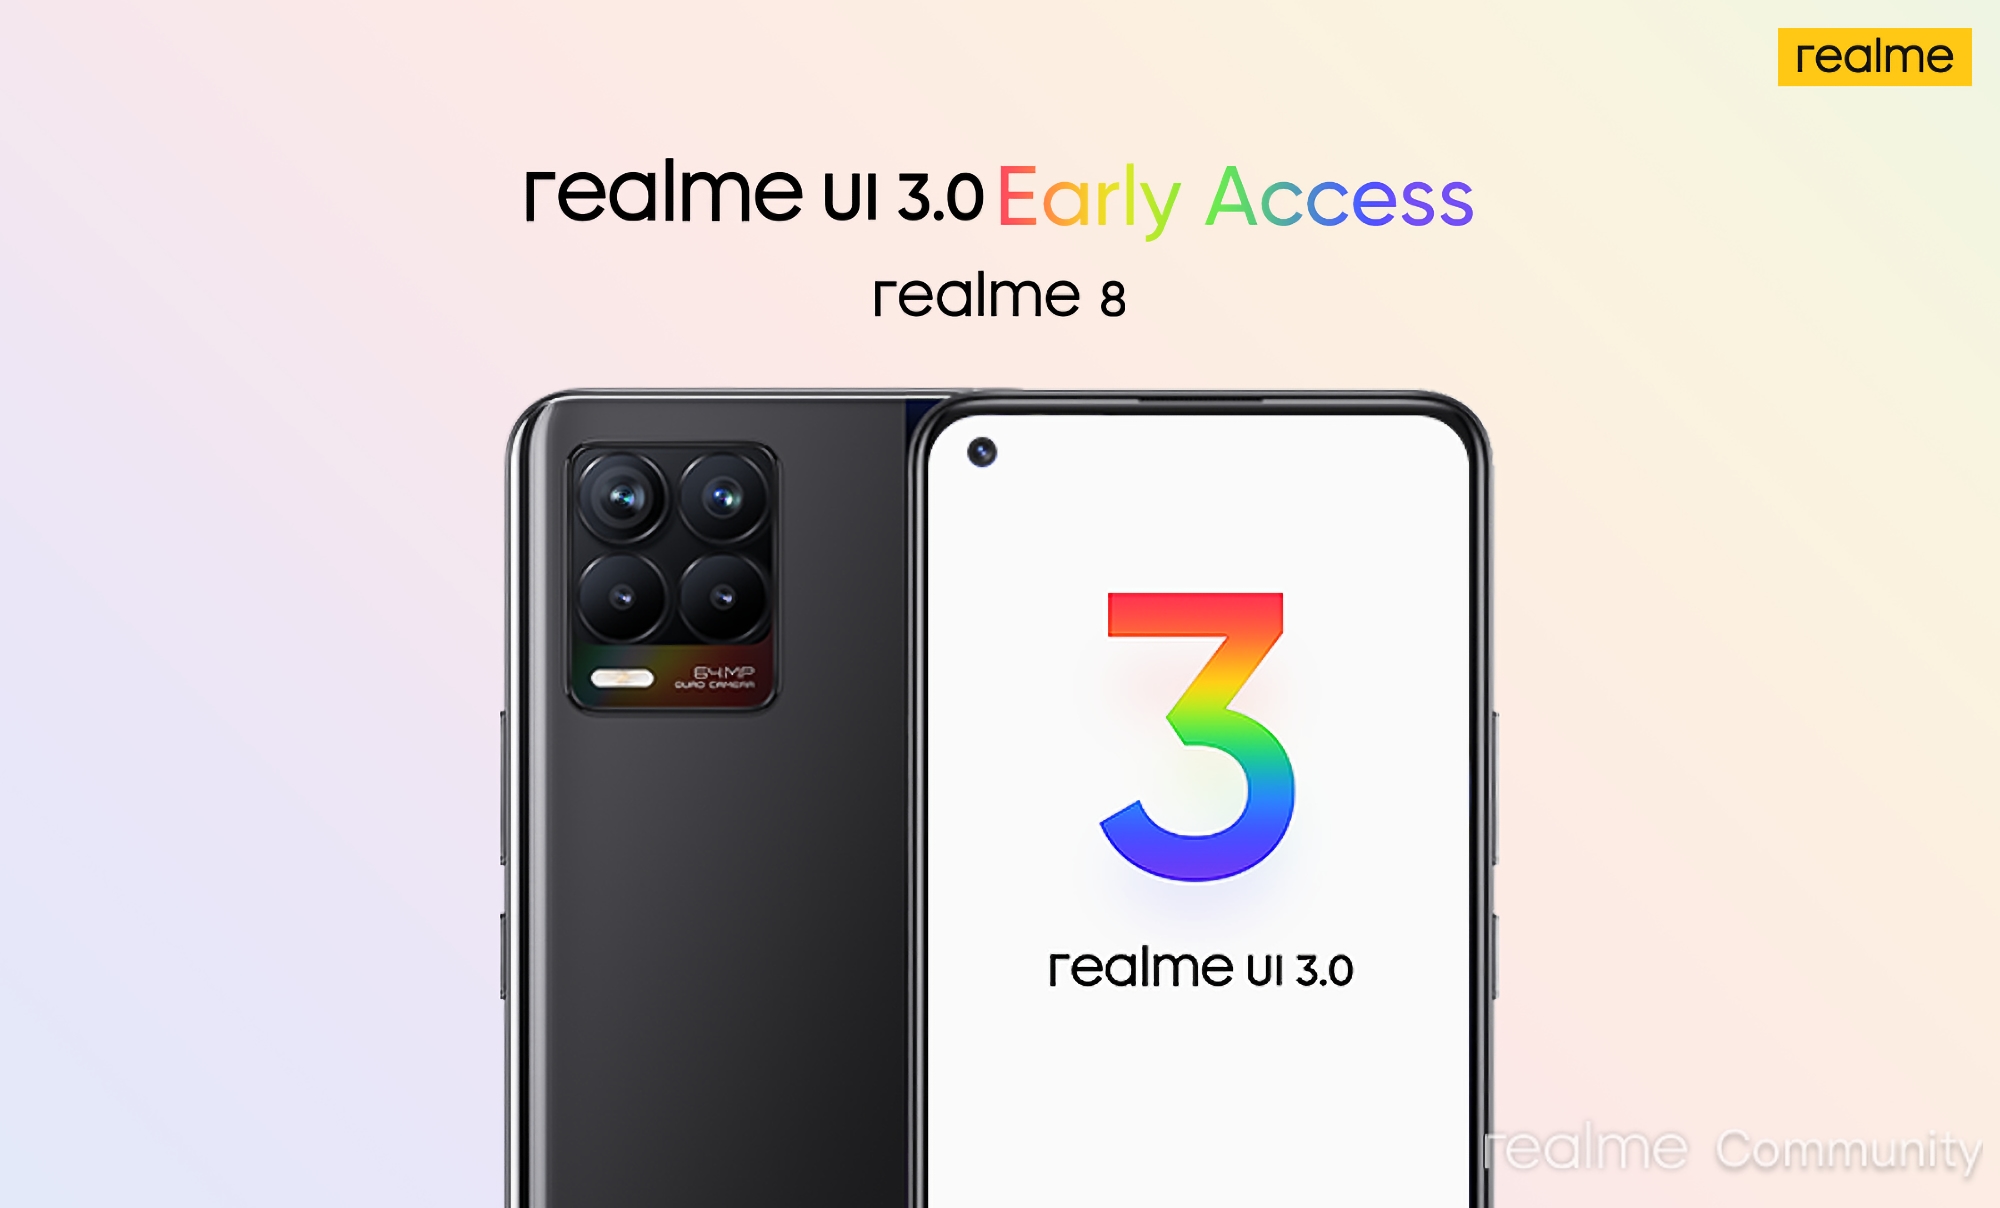 realme a lancé le test realme UI 3.0 basé sur Android 12 pour realme 8